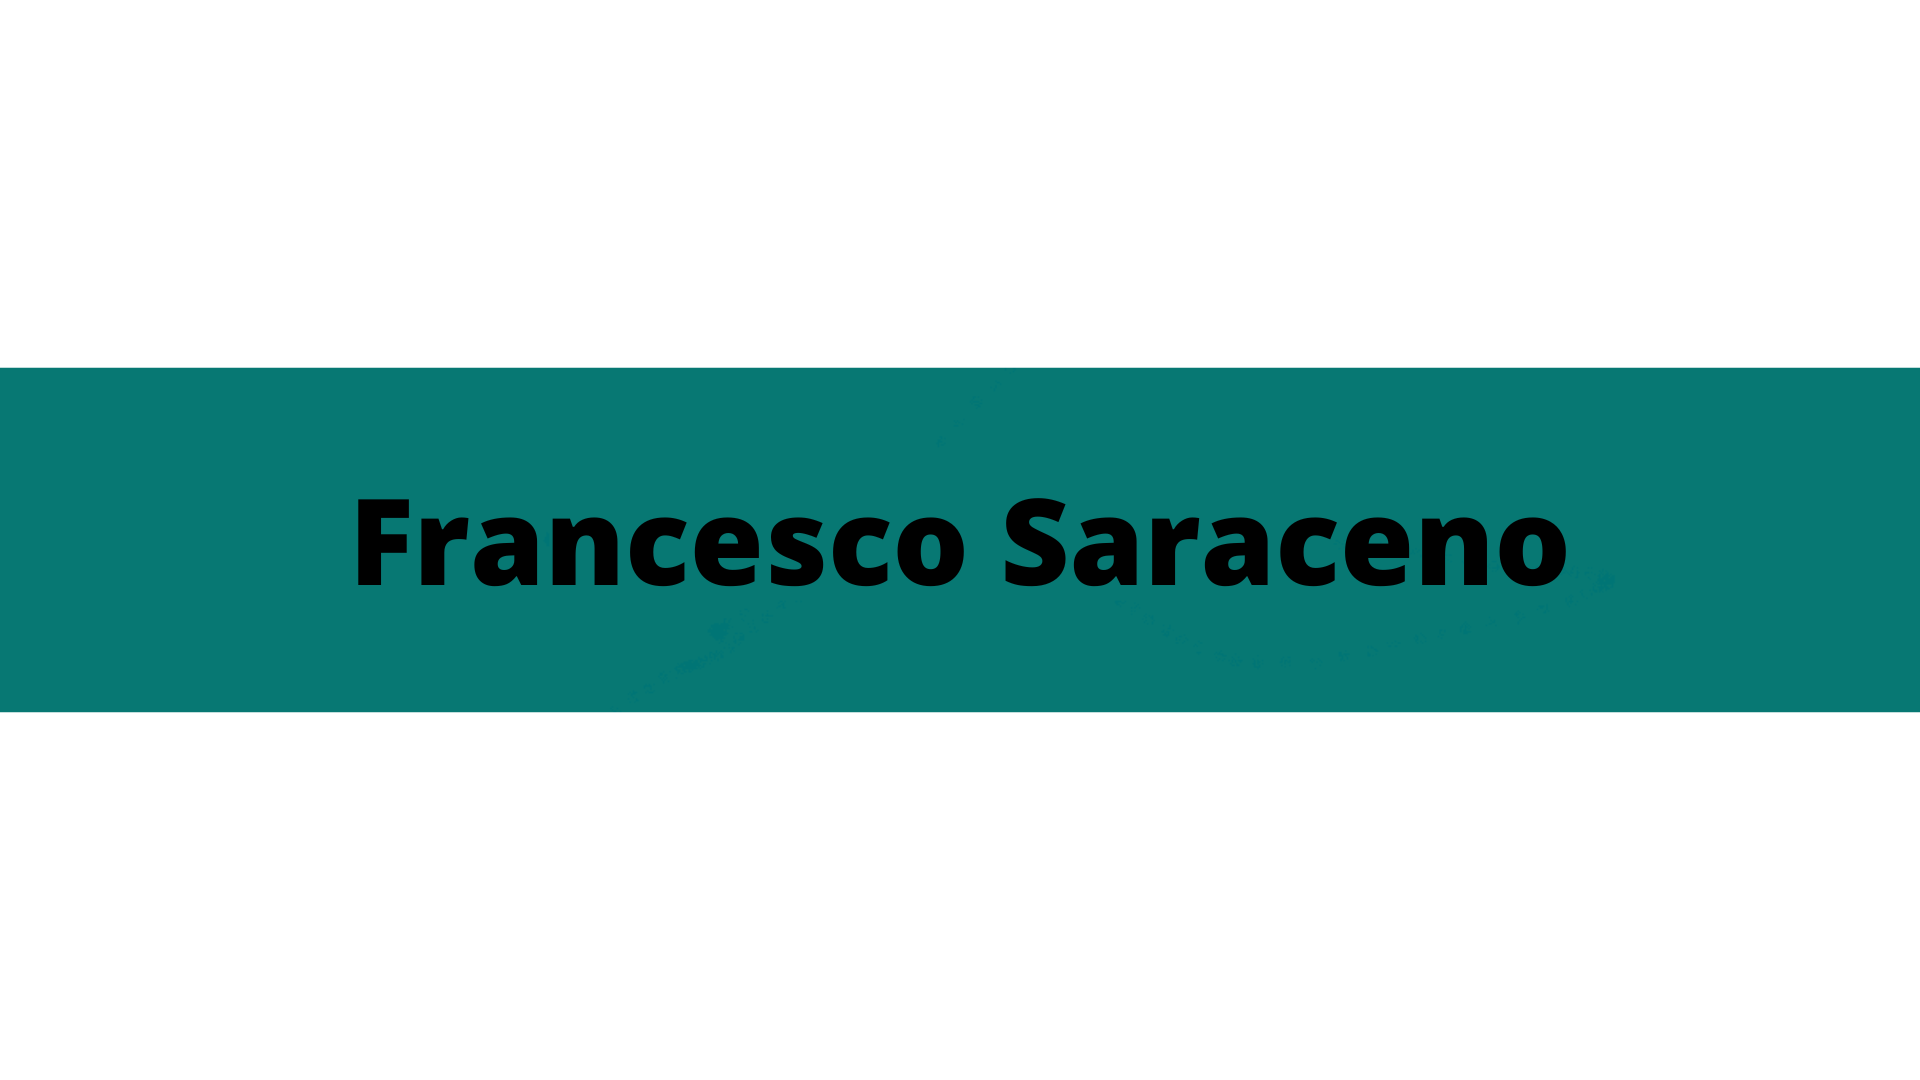 Saraceno